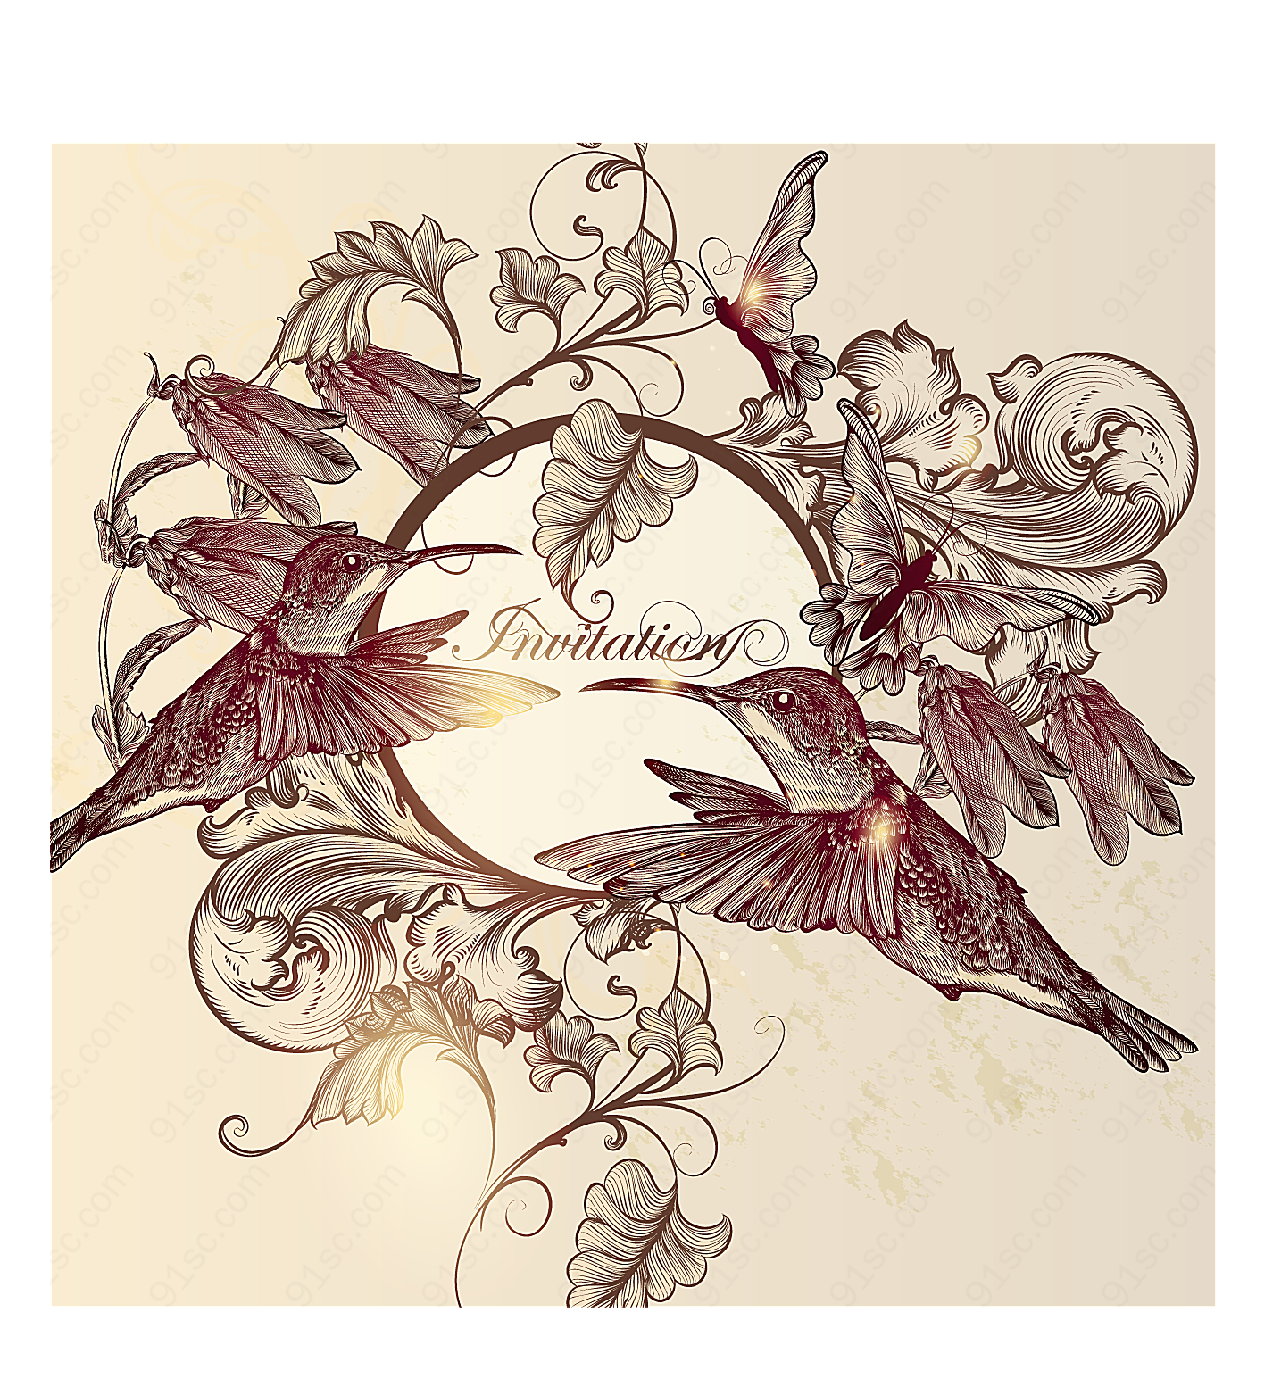 版画风格蜂鸟与花朵矢量图案